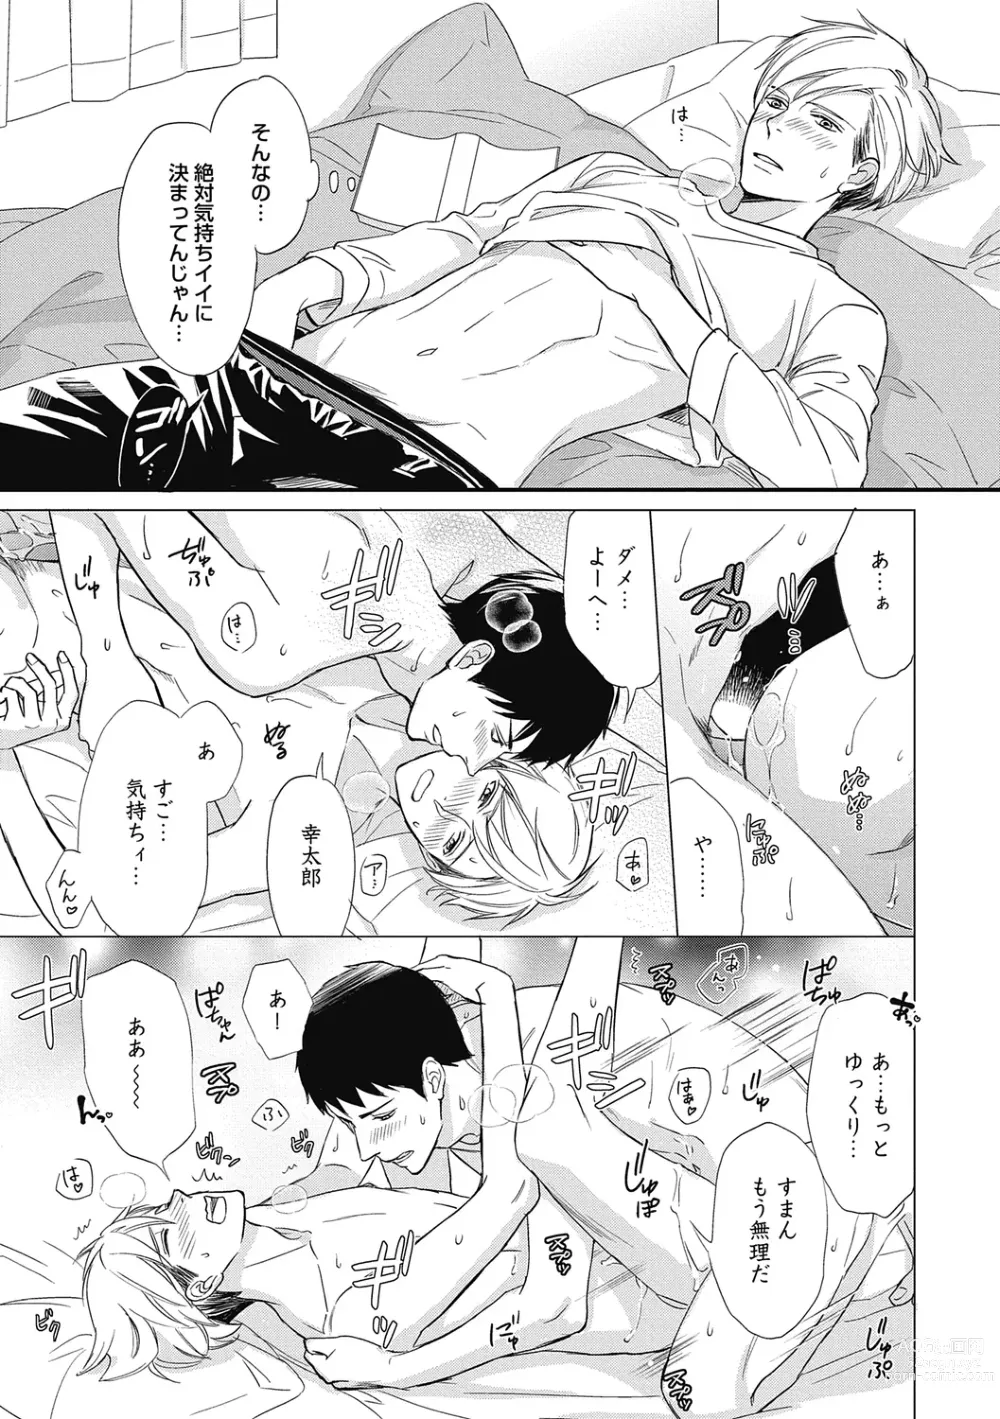 Page 13 of manga Saeki-kun wa Are ga Shitai